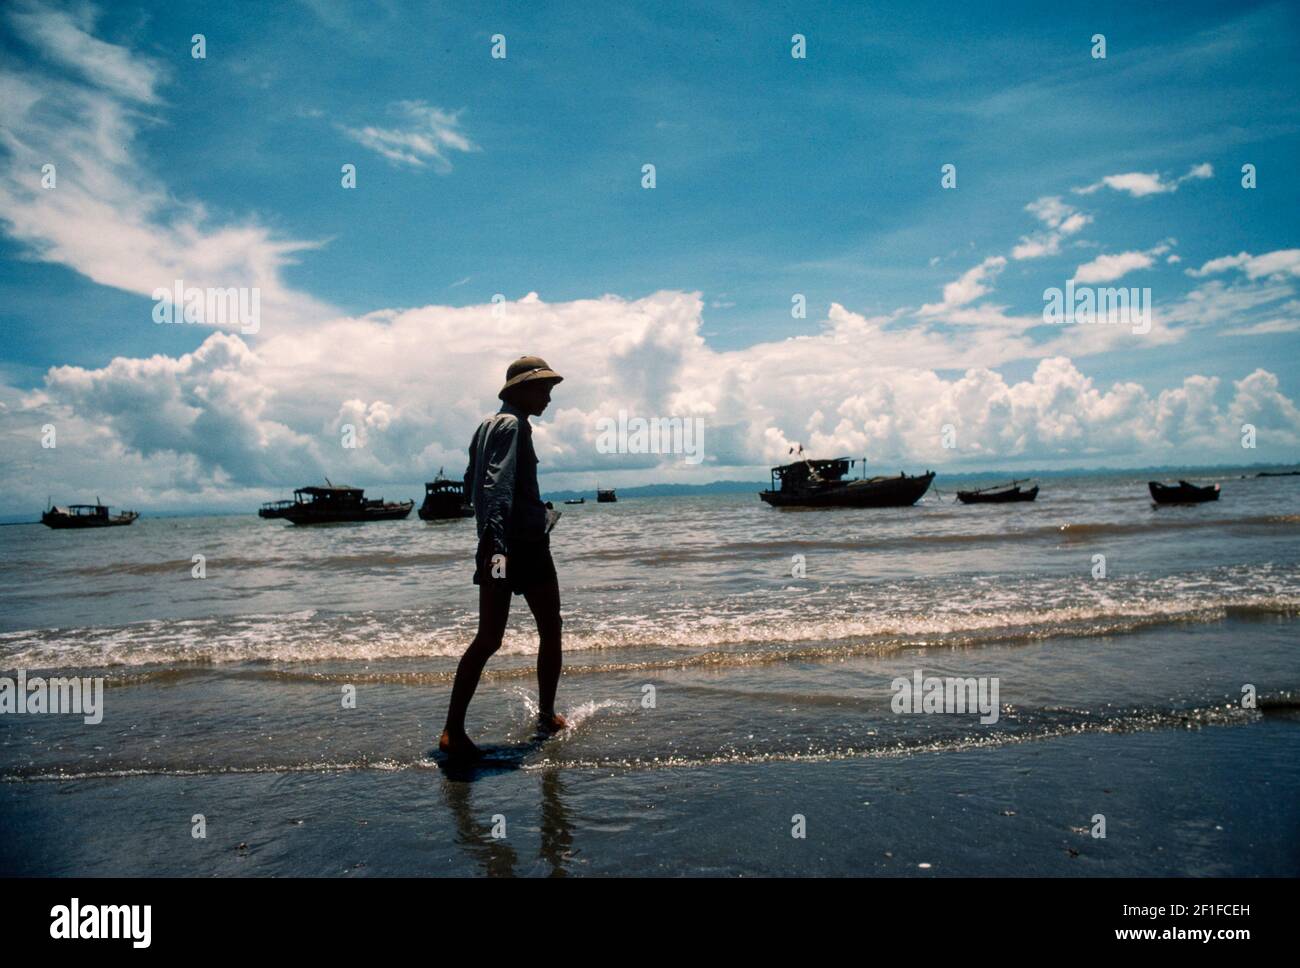 Un pescatore con barca da pesca sullo sfondo, villaggio costiero, Vietnam del Nord, giugno 1980 Foto Stock